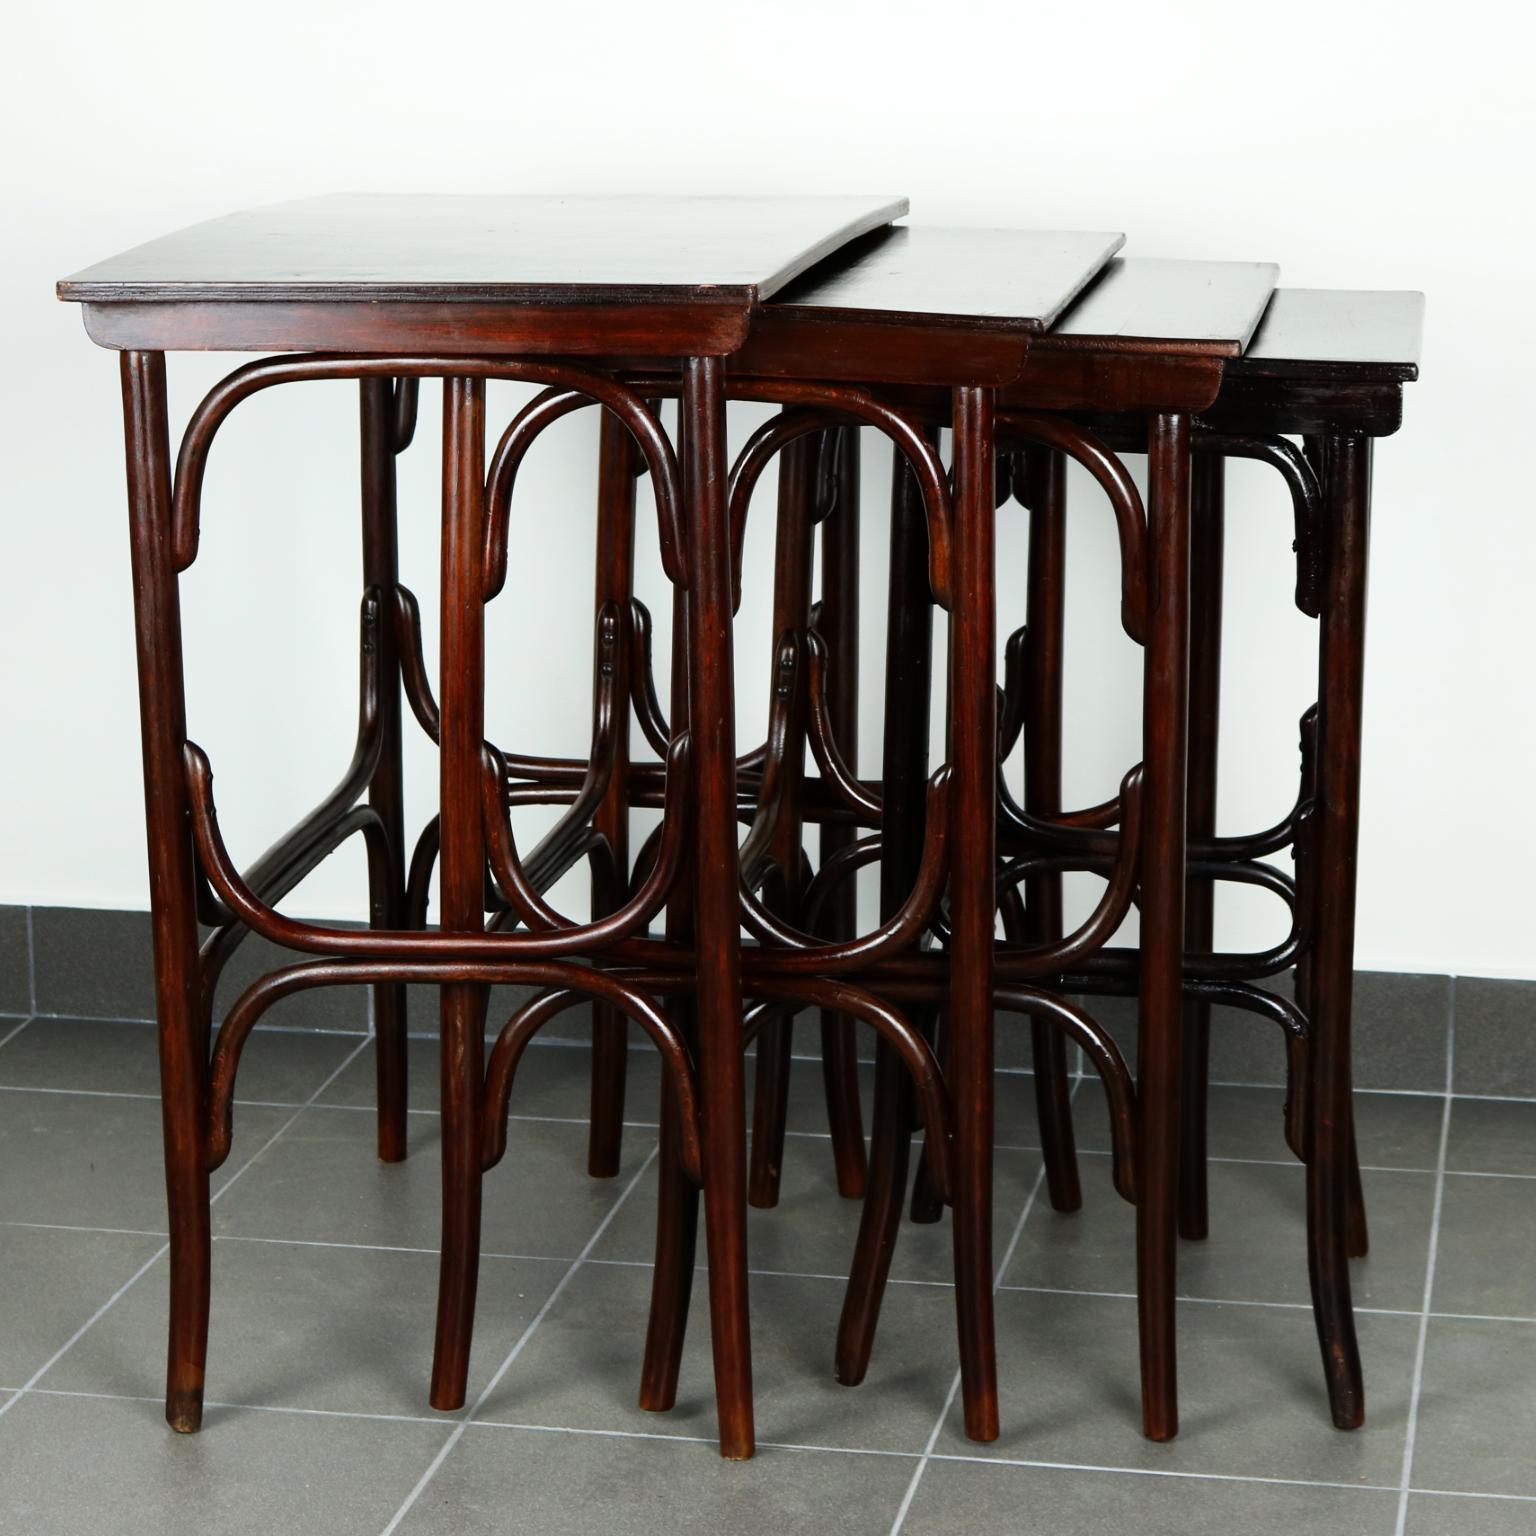 Ensemble de 4 tables gigognes Art Nouveau ou tables Quartetto de Thonet Wien, modèle no. 10, vers 1905.
  